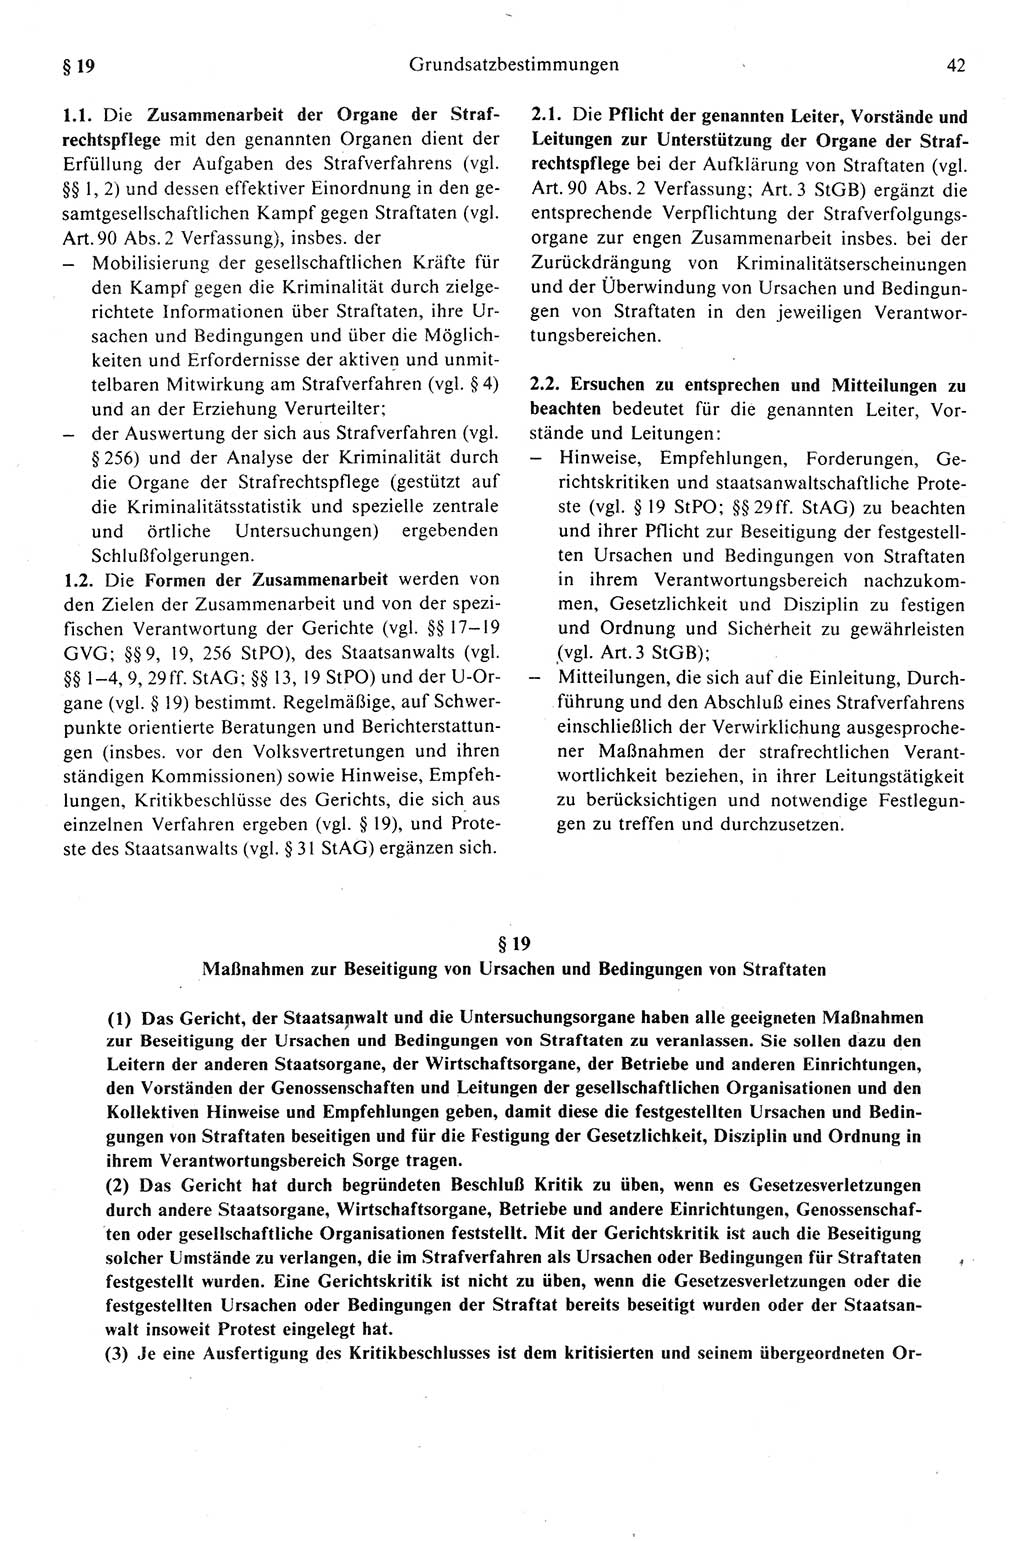 Strafprozeßrecht der DDR (Deutsche Demokratische Republik), Kommentar zur Strafprozeßordnung (StPO) 1989, Seite 42 (Strafprozeßr. DDR Komm. StPO 1989, S. 42)